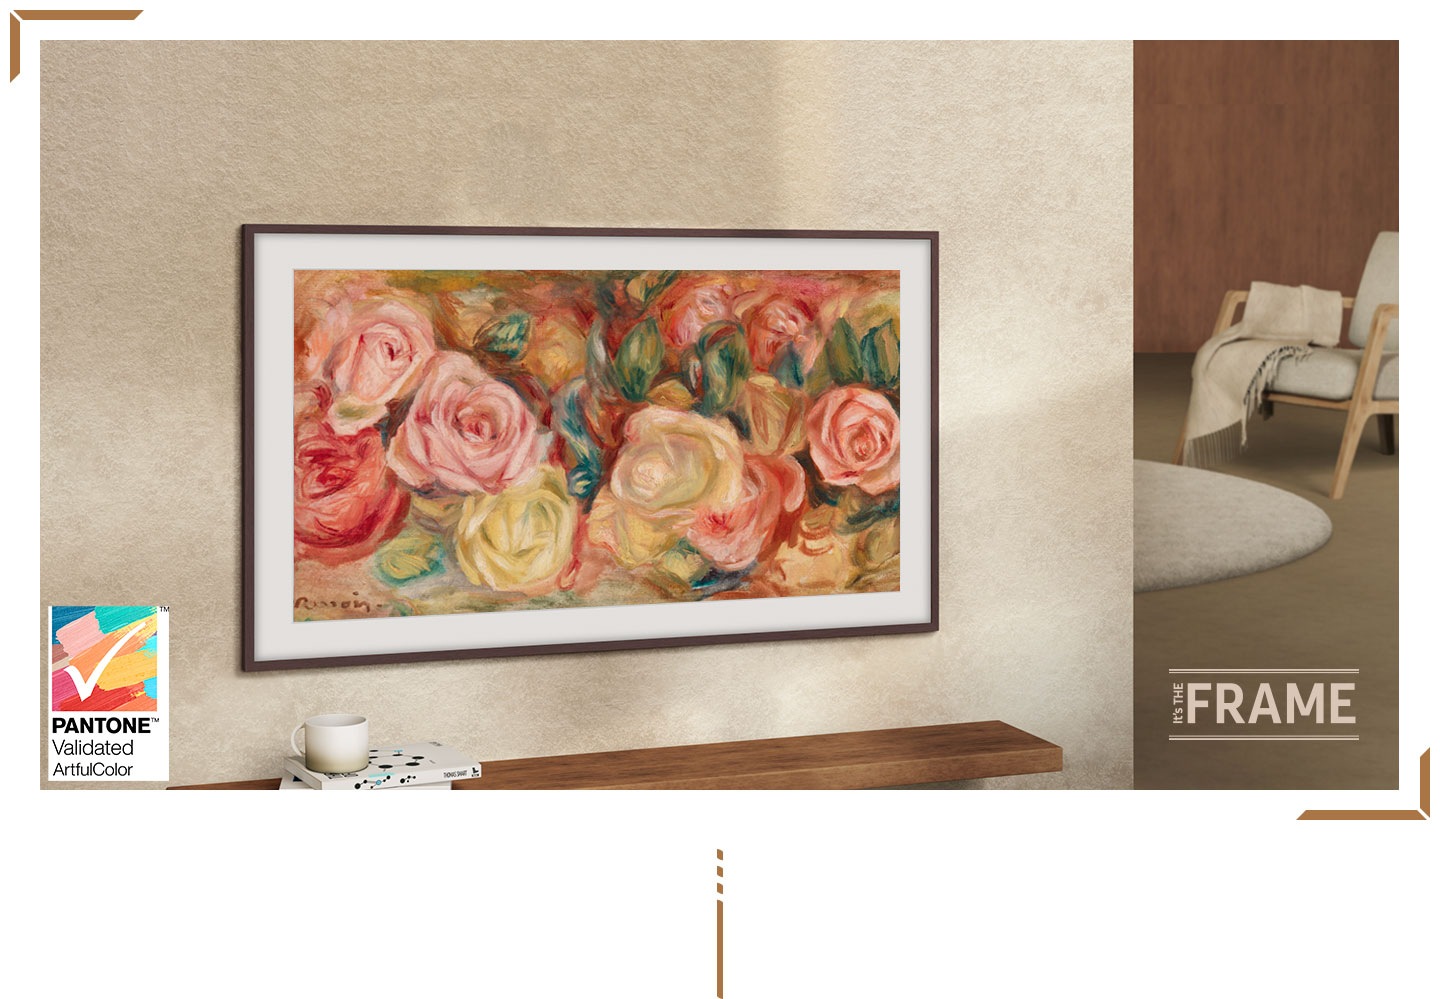 Телевизор Frame установлен на стене. На экране изображена картина с розами. На логотипе написано «It’s The Frame» и имеется штамп сертификации PANTONE Validated.